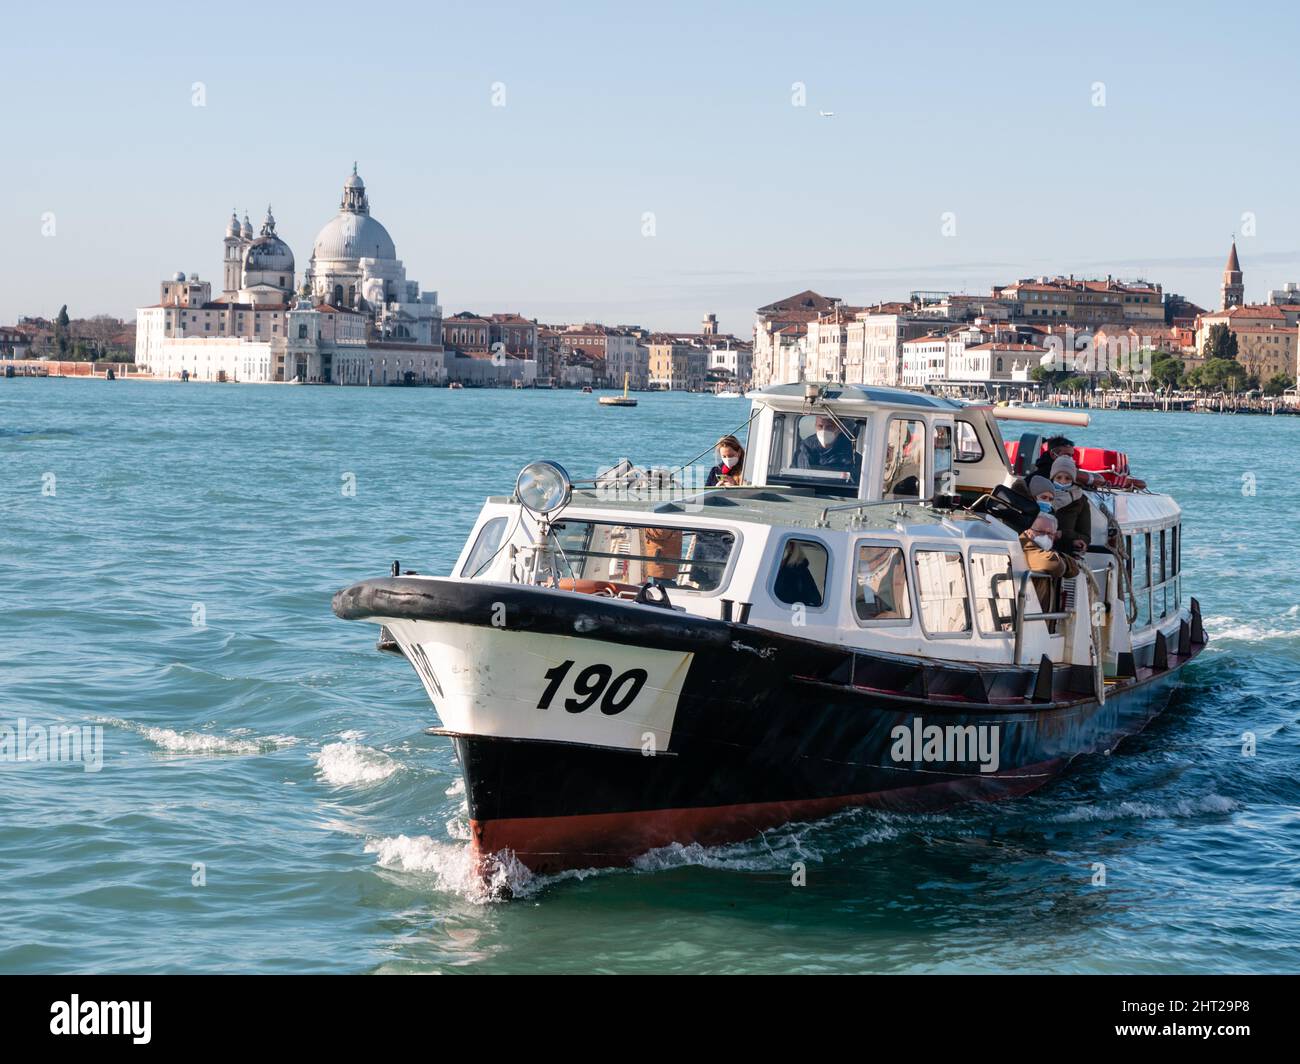 Venise, Italie - janvier 6 2022 : vaporetto Motoscafo bateau ou bateau-bus près de la gare de San Zaccaria Banque D'Images